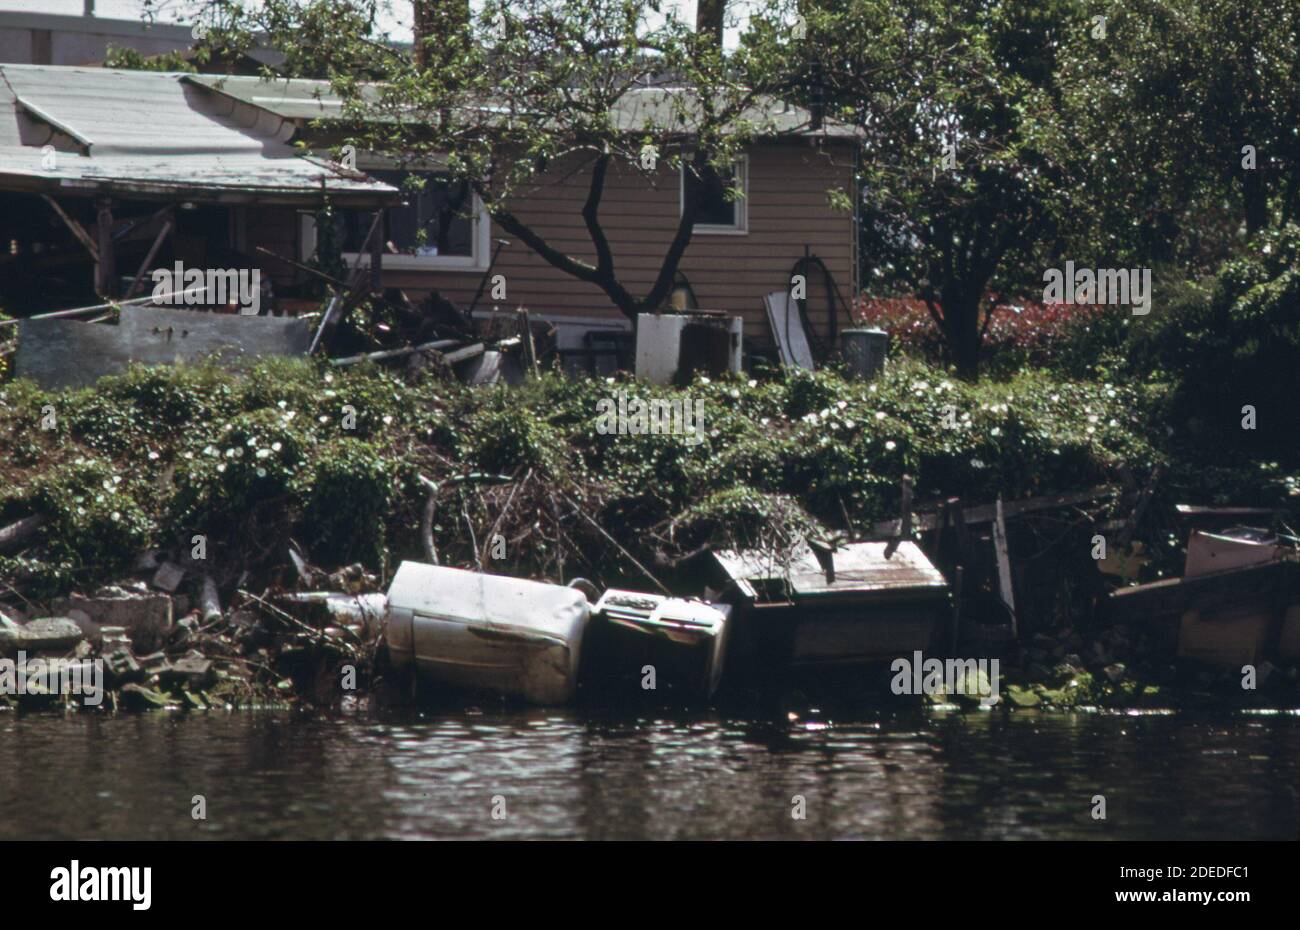 1970-er Foto (1973) - Hausbesitzer am Duwamish-Fluss verwendet weggeworfene Kühlschrank-Waschmaschine, Herd und Beton, um Erosion des Flussufers zu verhindern" Stockfoto